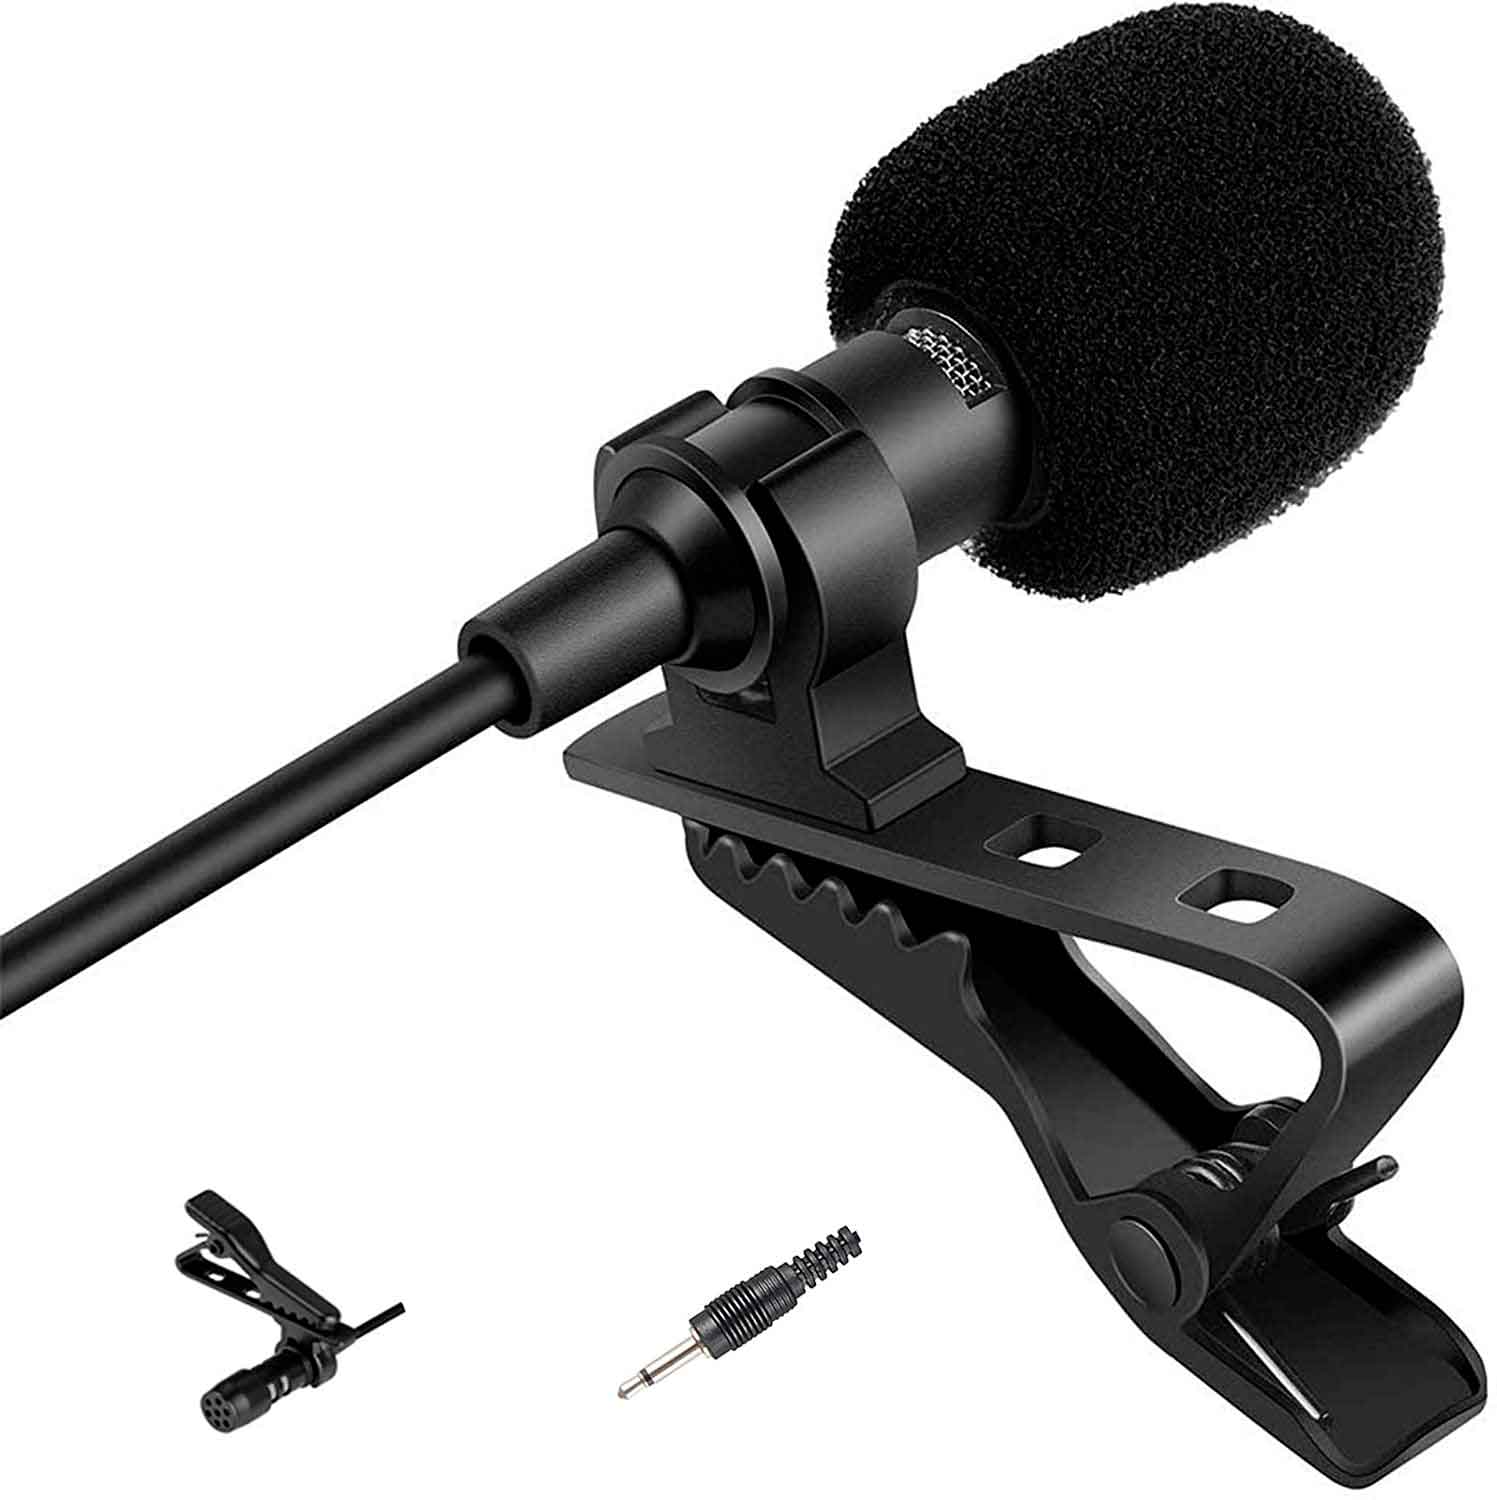 Lavalier micrófono de solapa para teléfonos conector 3.5mm